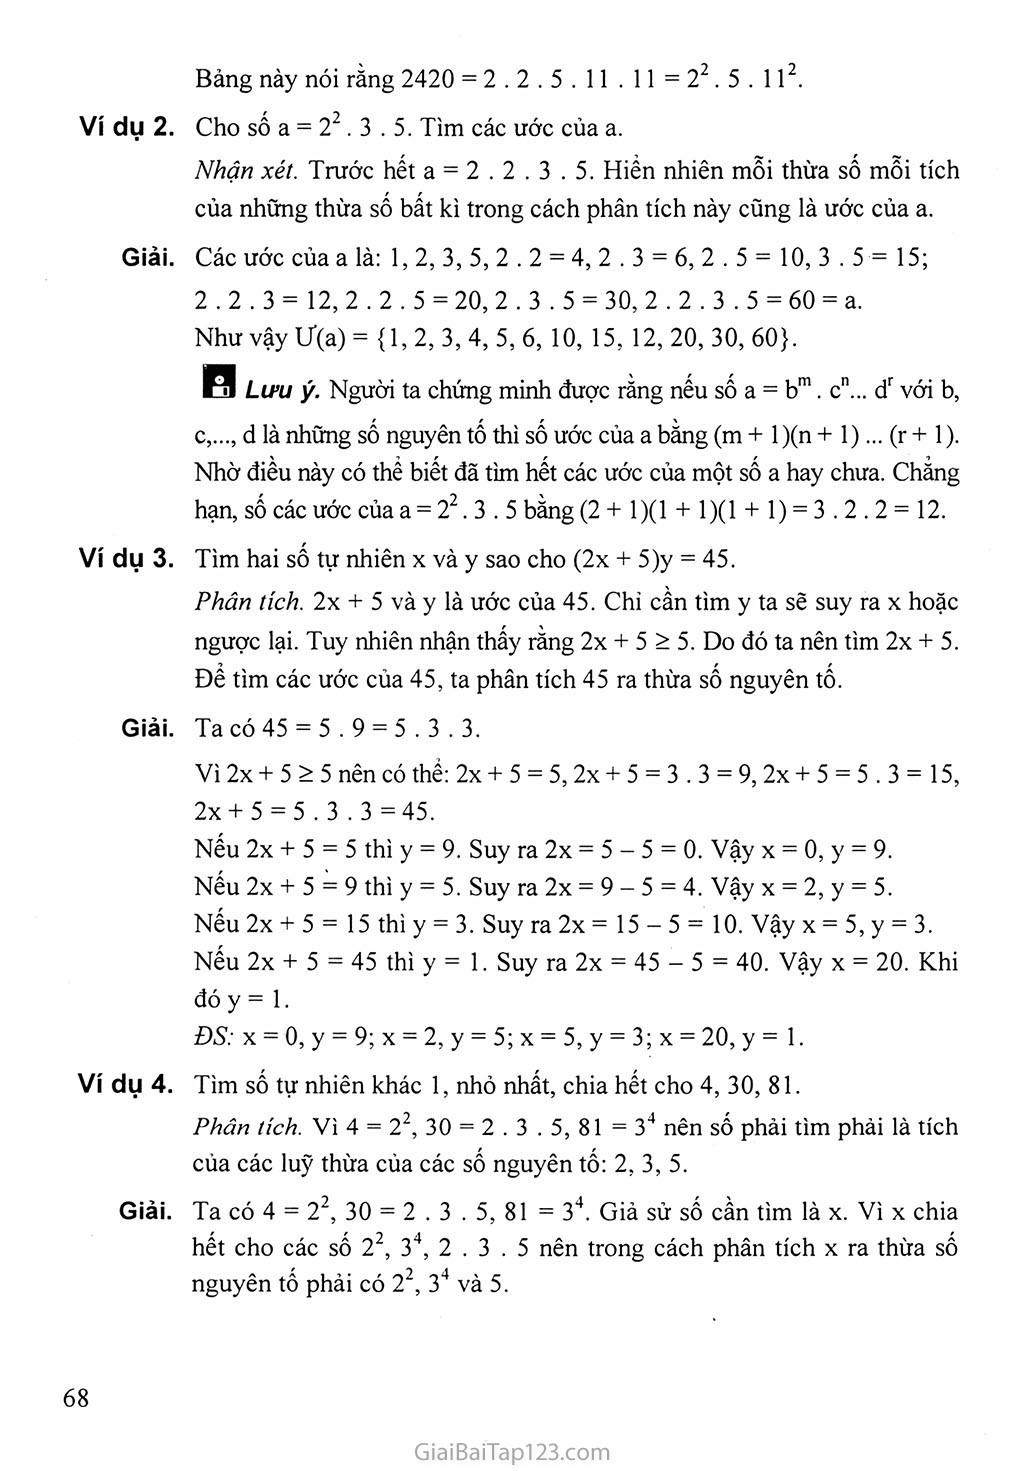 Bài 15. Phân tích một số ra thừa số nguyên tố trang 3